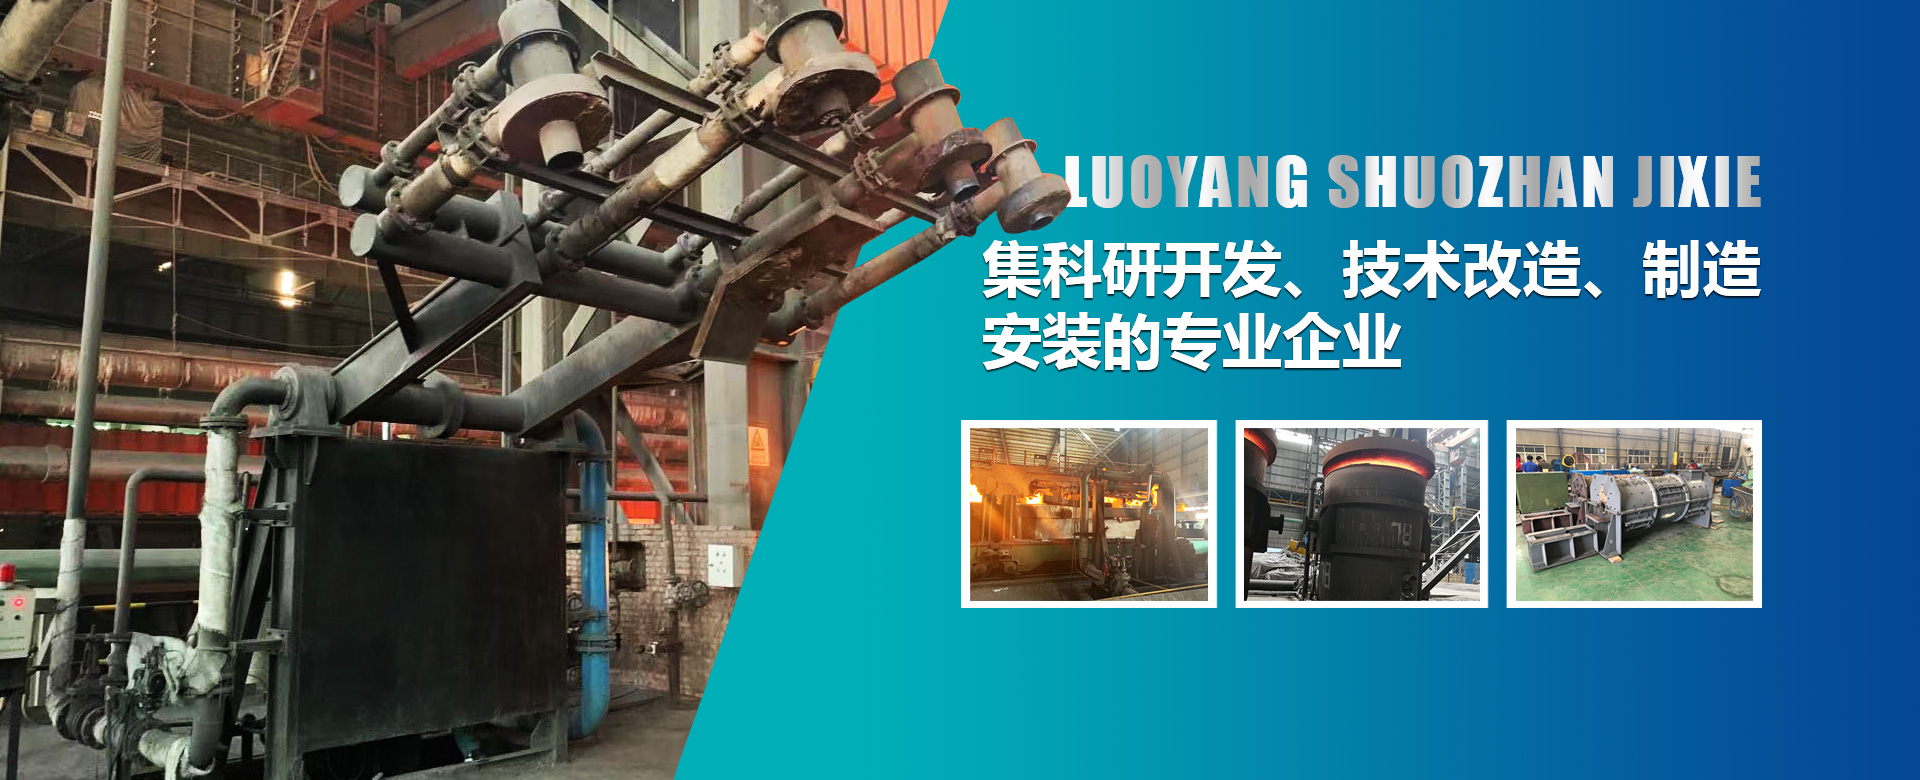 烘烤器是鋼鐵廠生產的必須設備，也是鋼鐵生產過程中能耗較大的設備